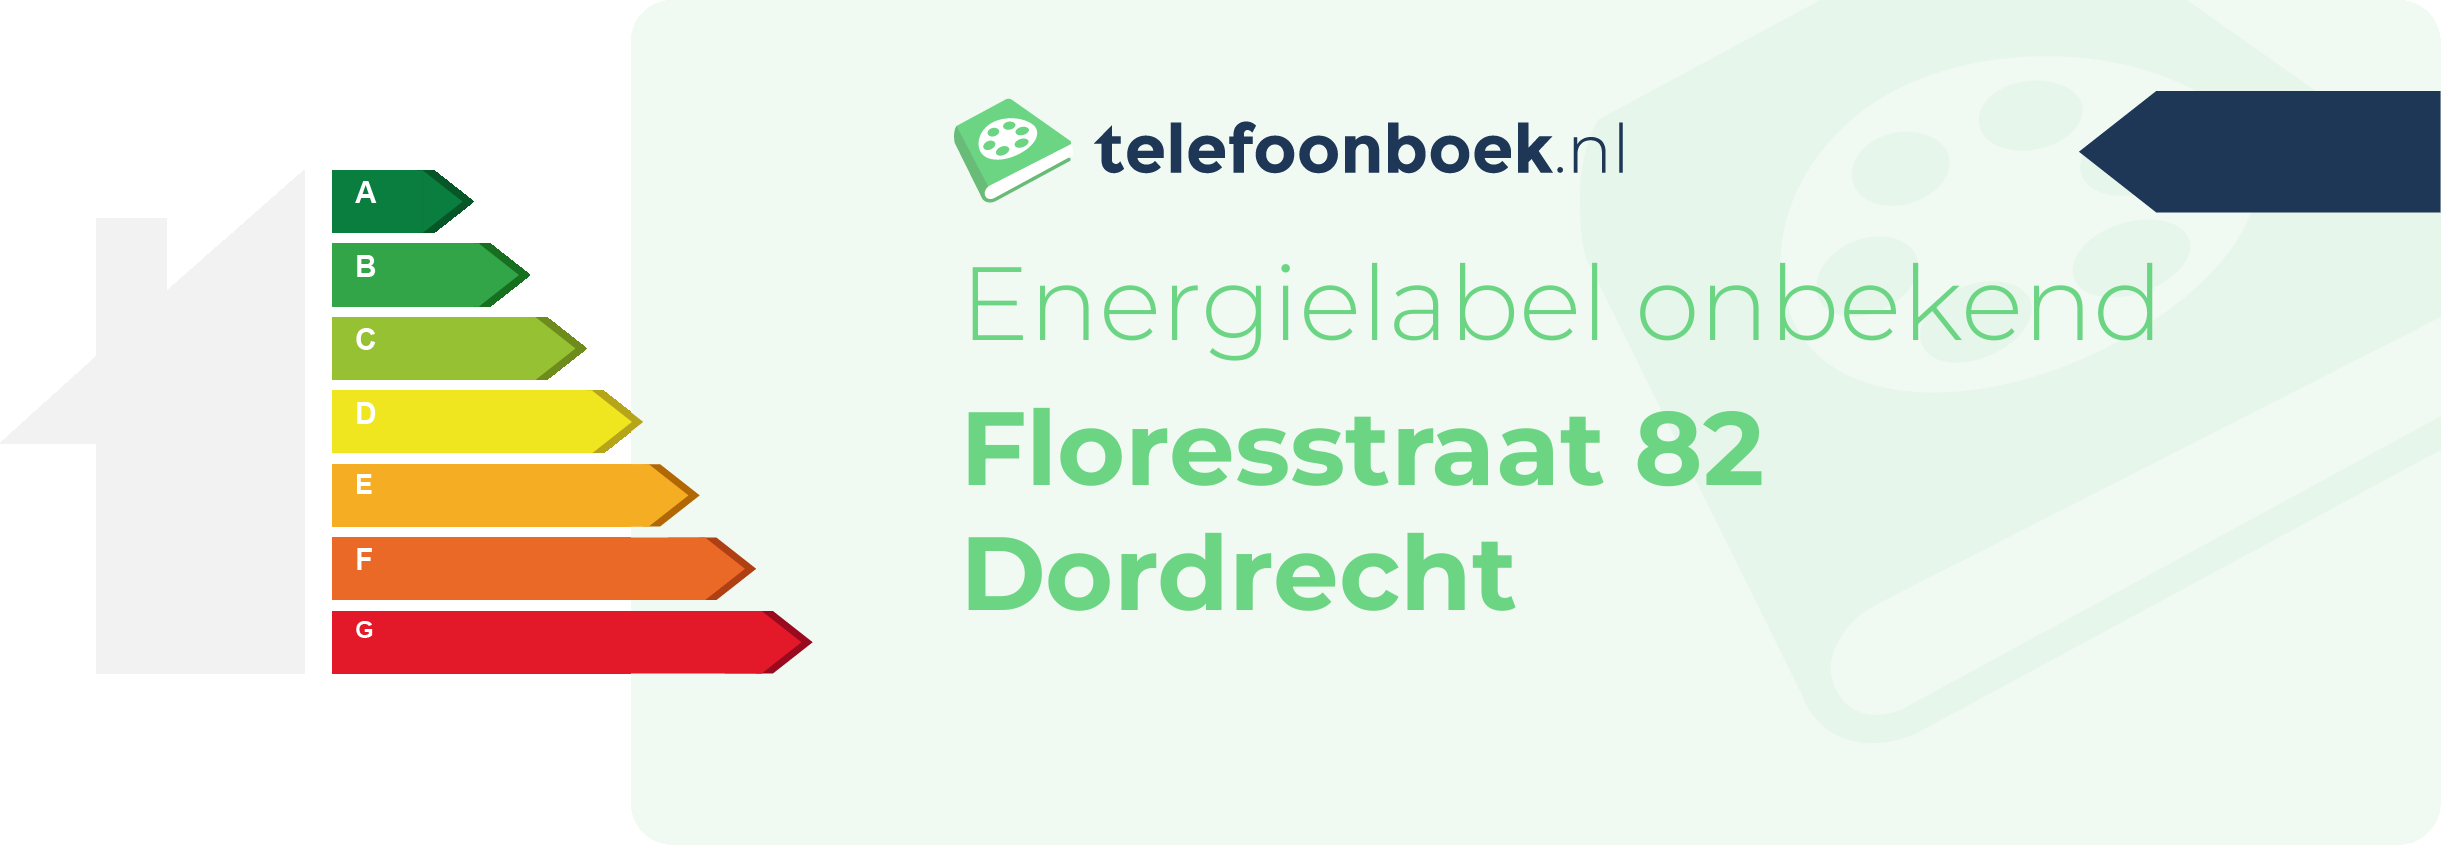 Energielabel Floresstraat 82 Dordrecht